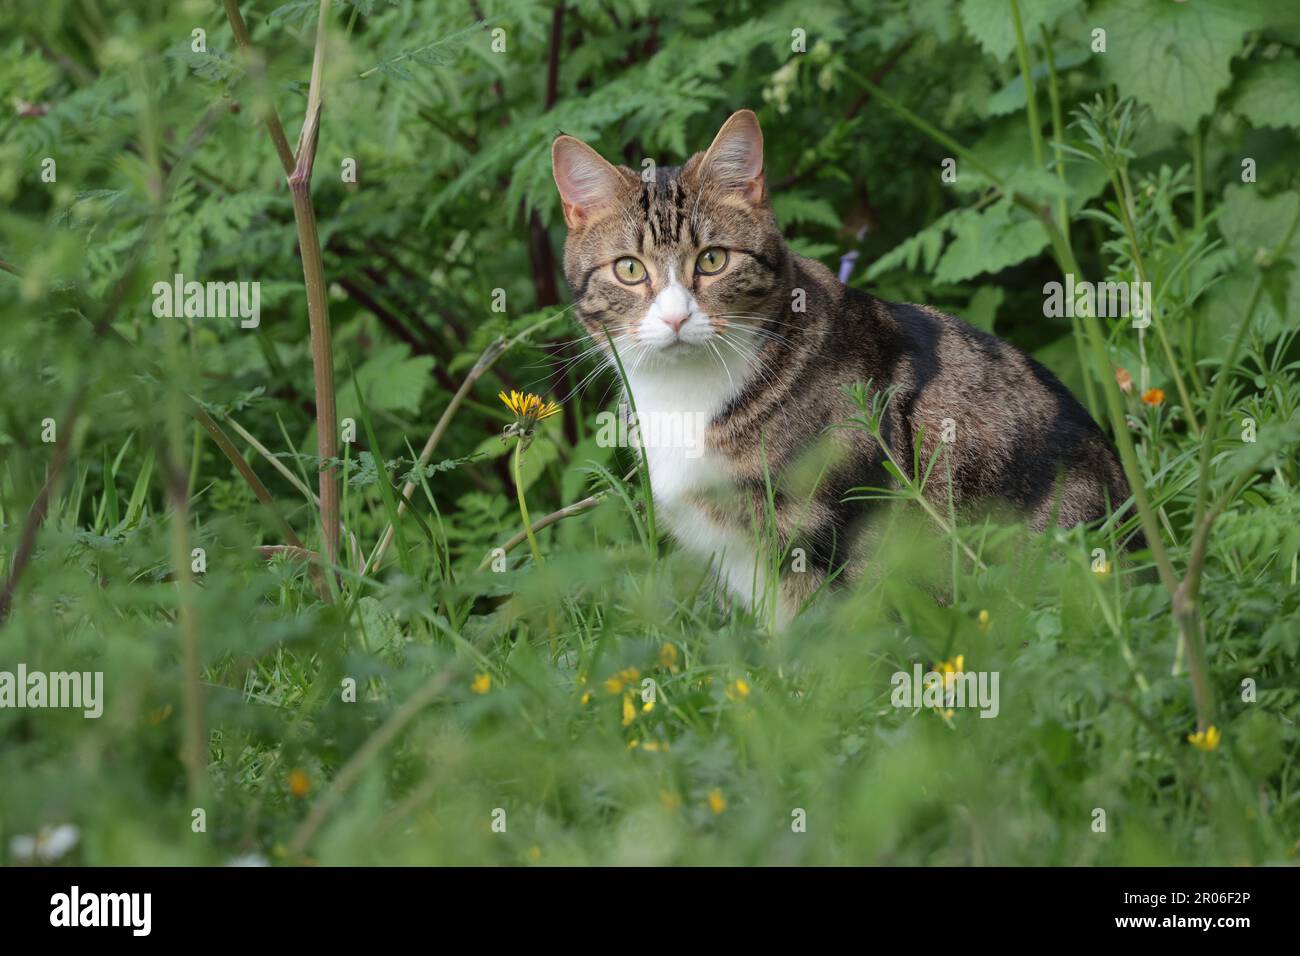 Tabby de chat blanc de poitrine gorge et museau rose nez verdâtre yeux ambres assis dans la végétation dans la région boisée locale fin de la saison de printemps au royaume-uni Banque D'Images